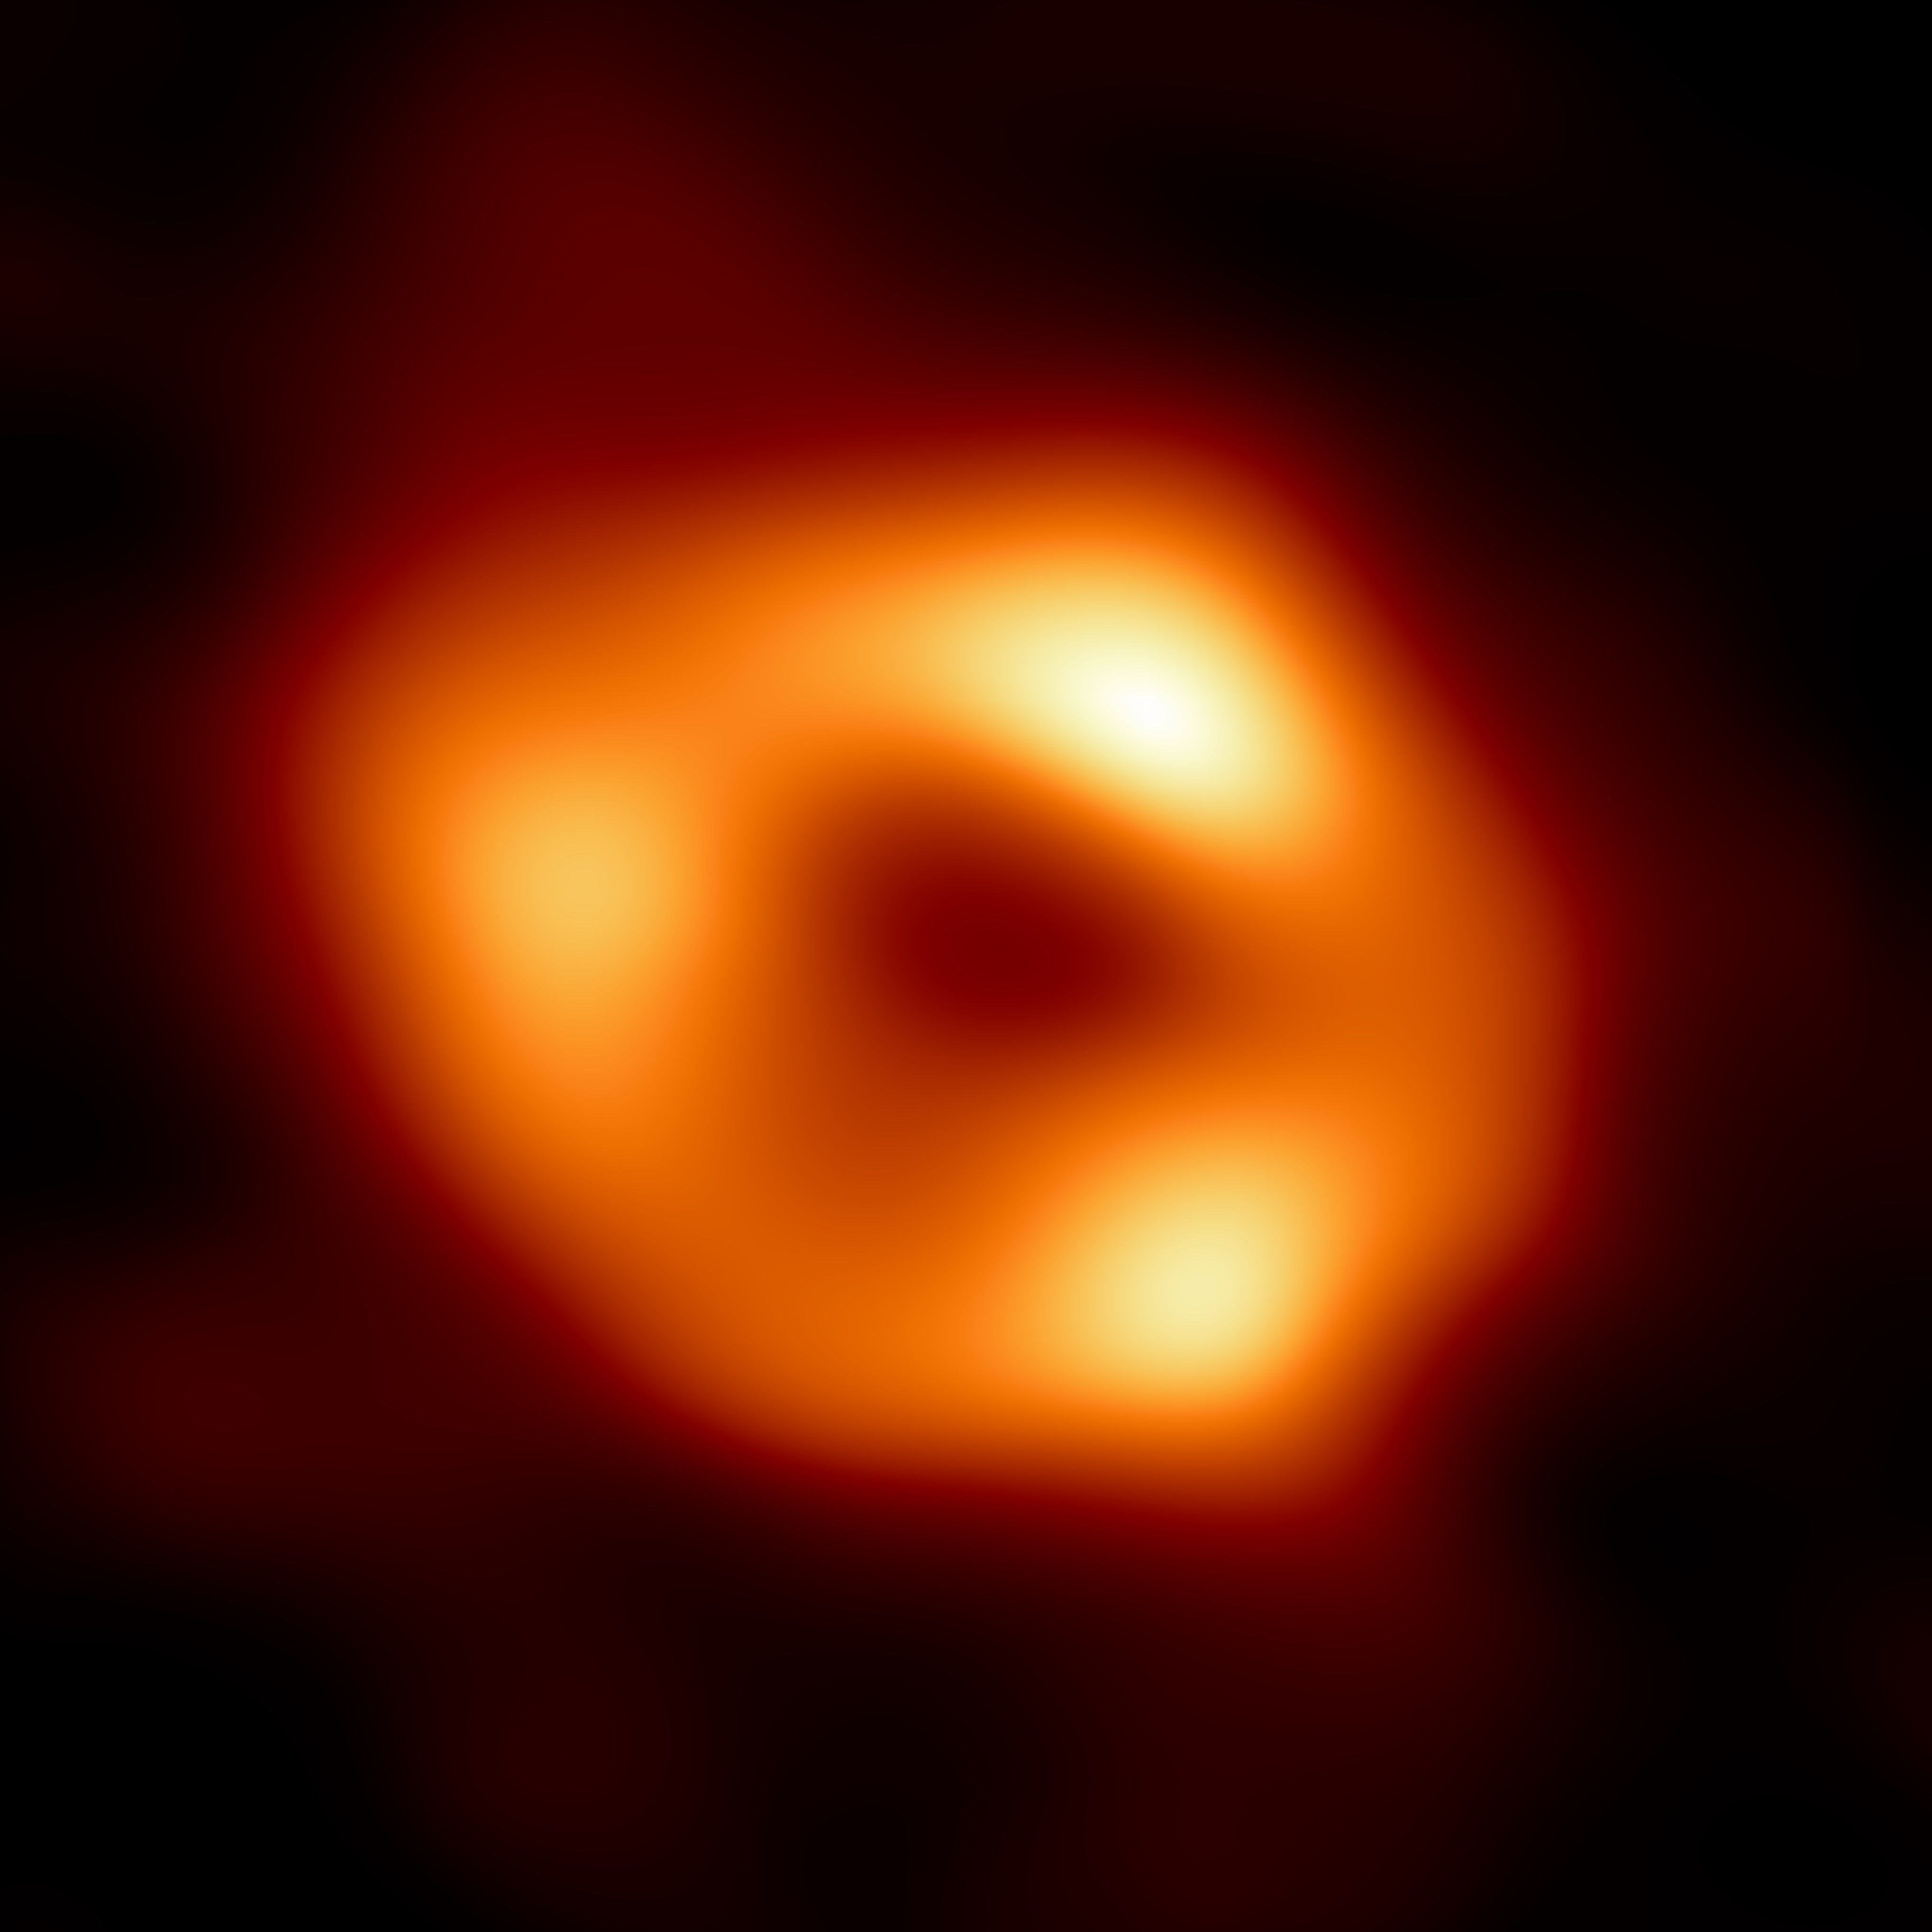 La primera imatge de Sagitari A*, el forat negre del centre de la Via Làctia